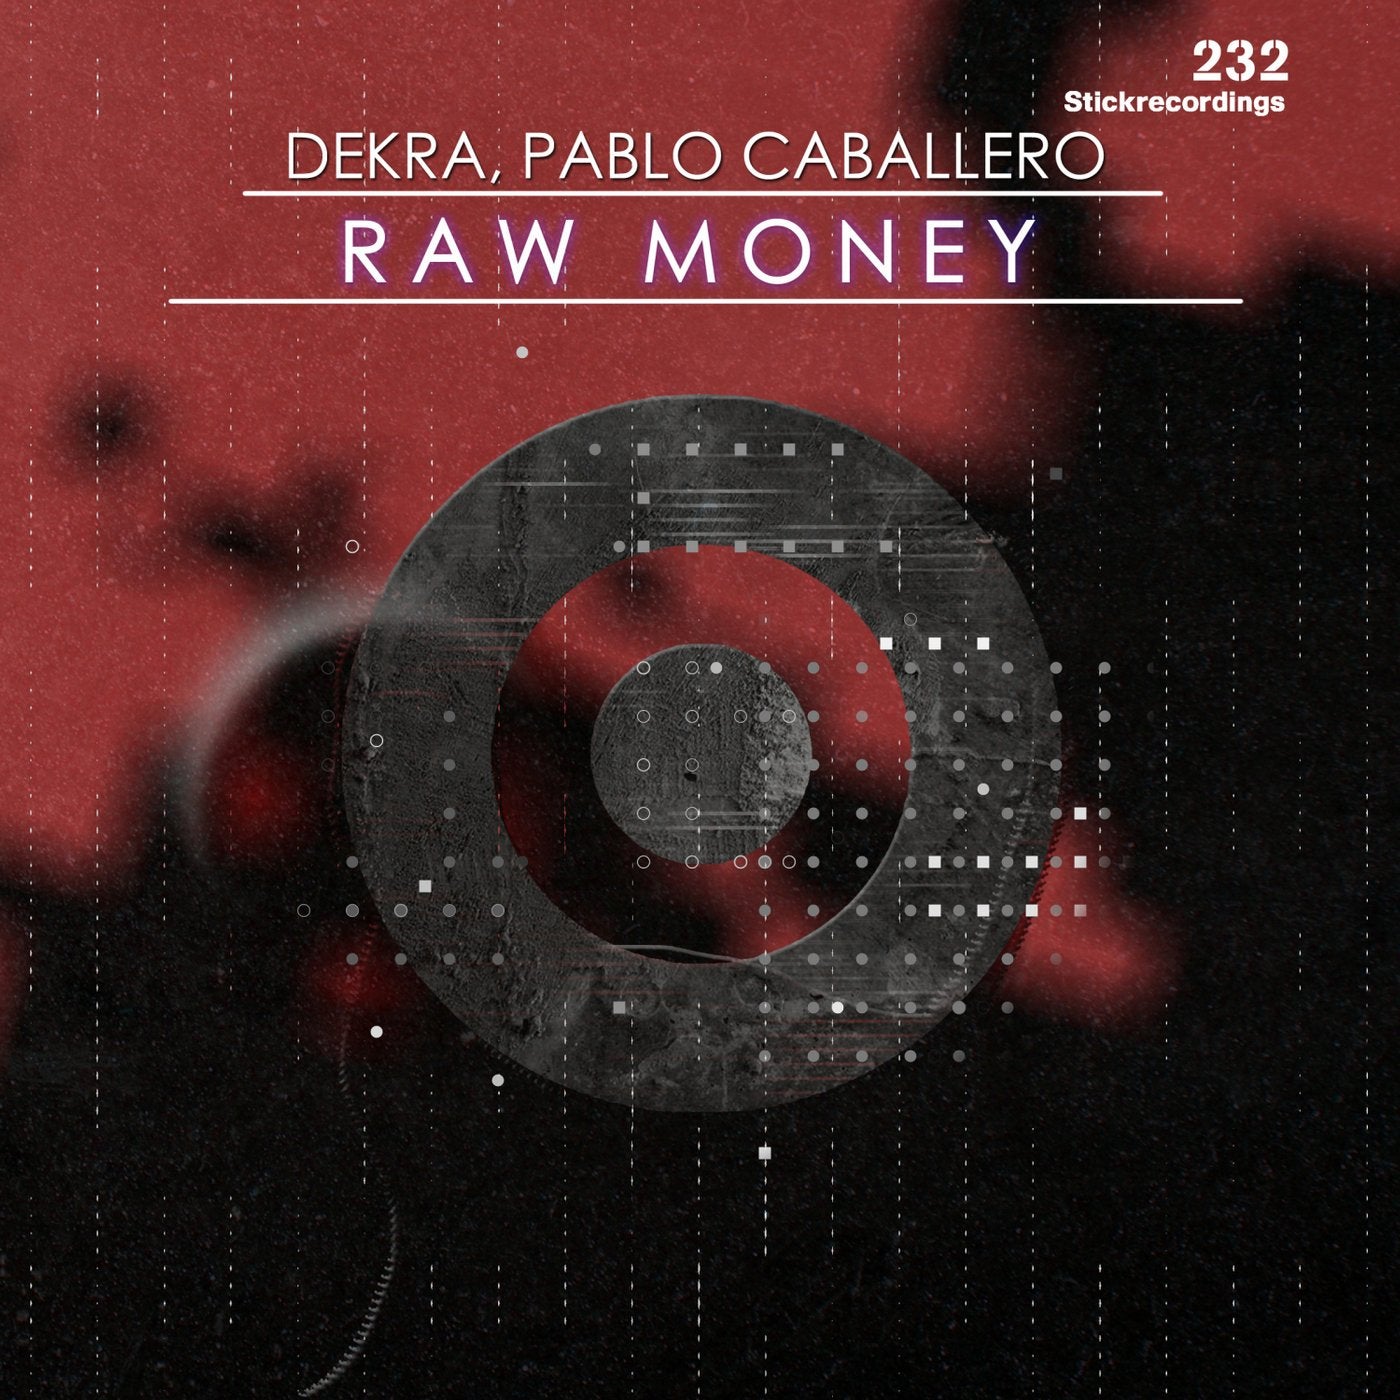 Raw Money